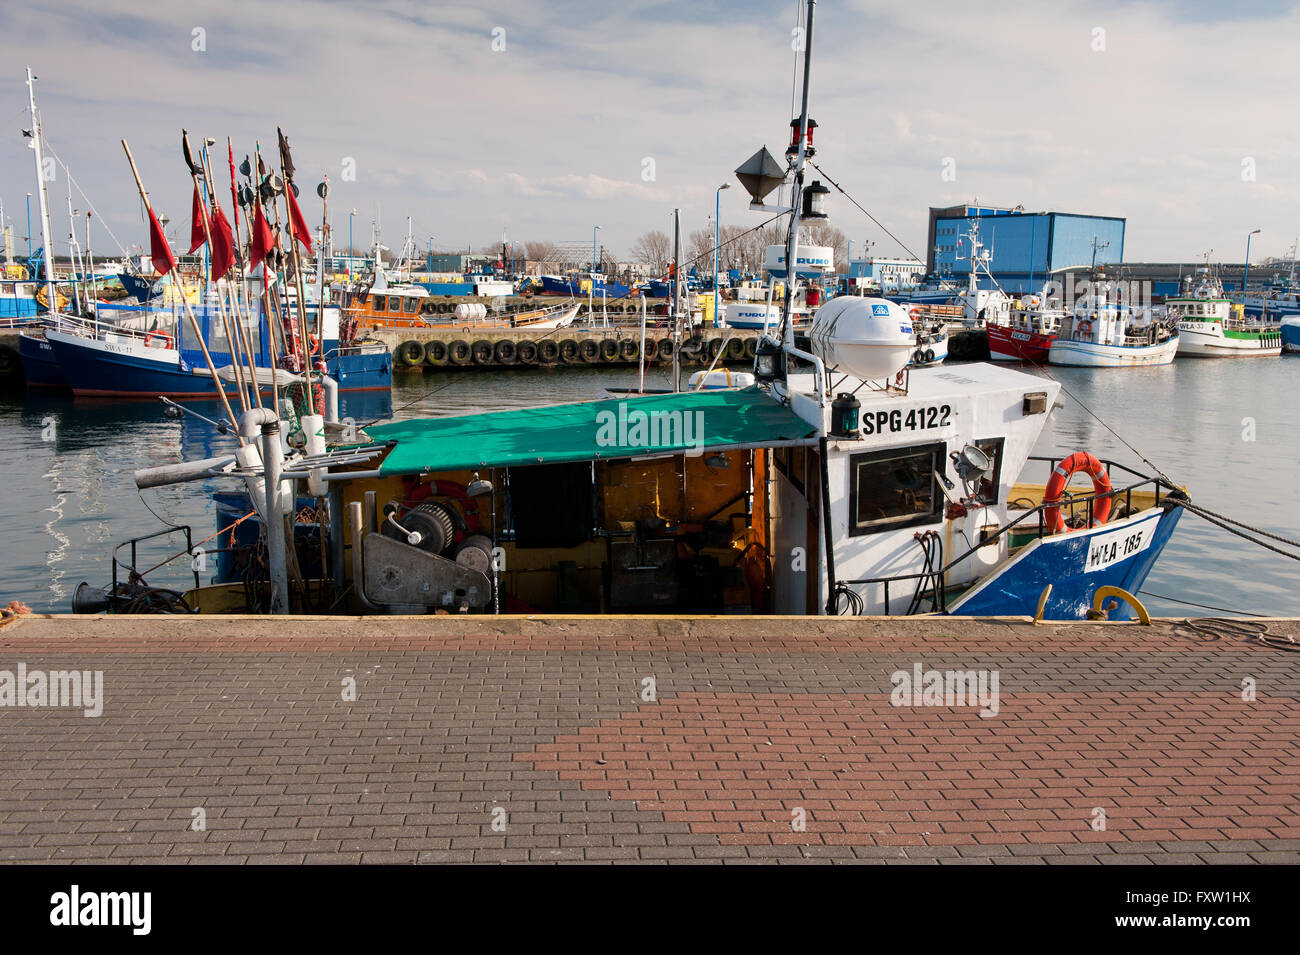 Fischerei Schiffe im Hafen von Szkuner in Wladyslawowo, Polen, Europa. Festgemachten Schiffe am Ufer Schoner, Fisch-Industrie-Werft Stockfoto